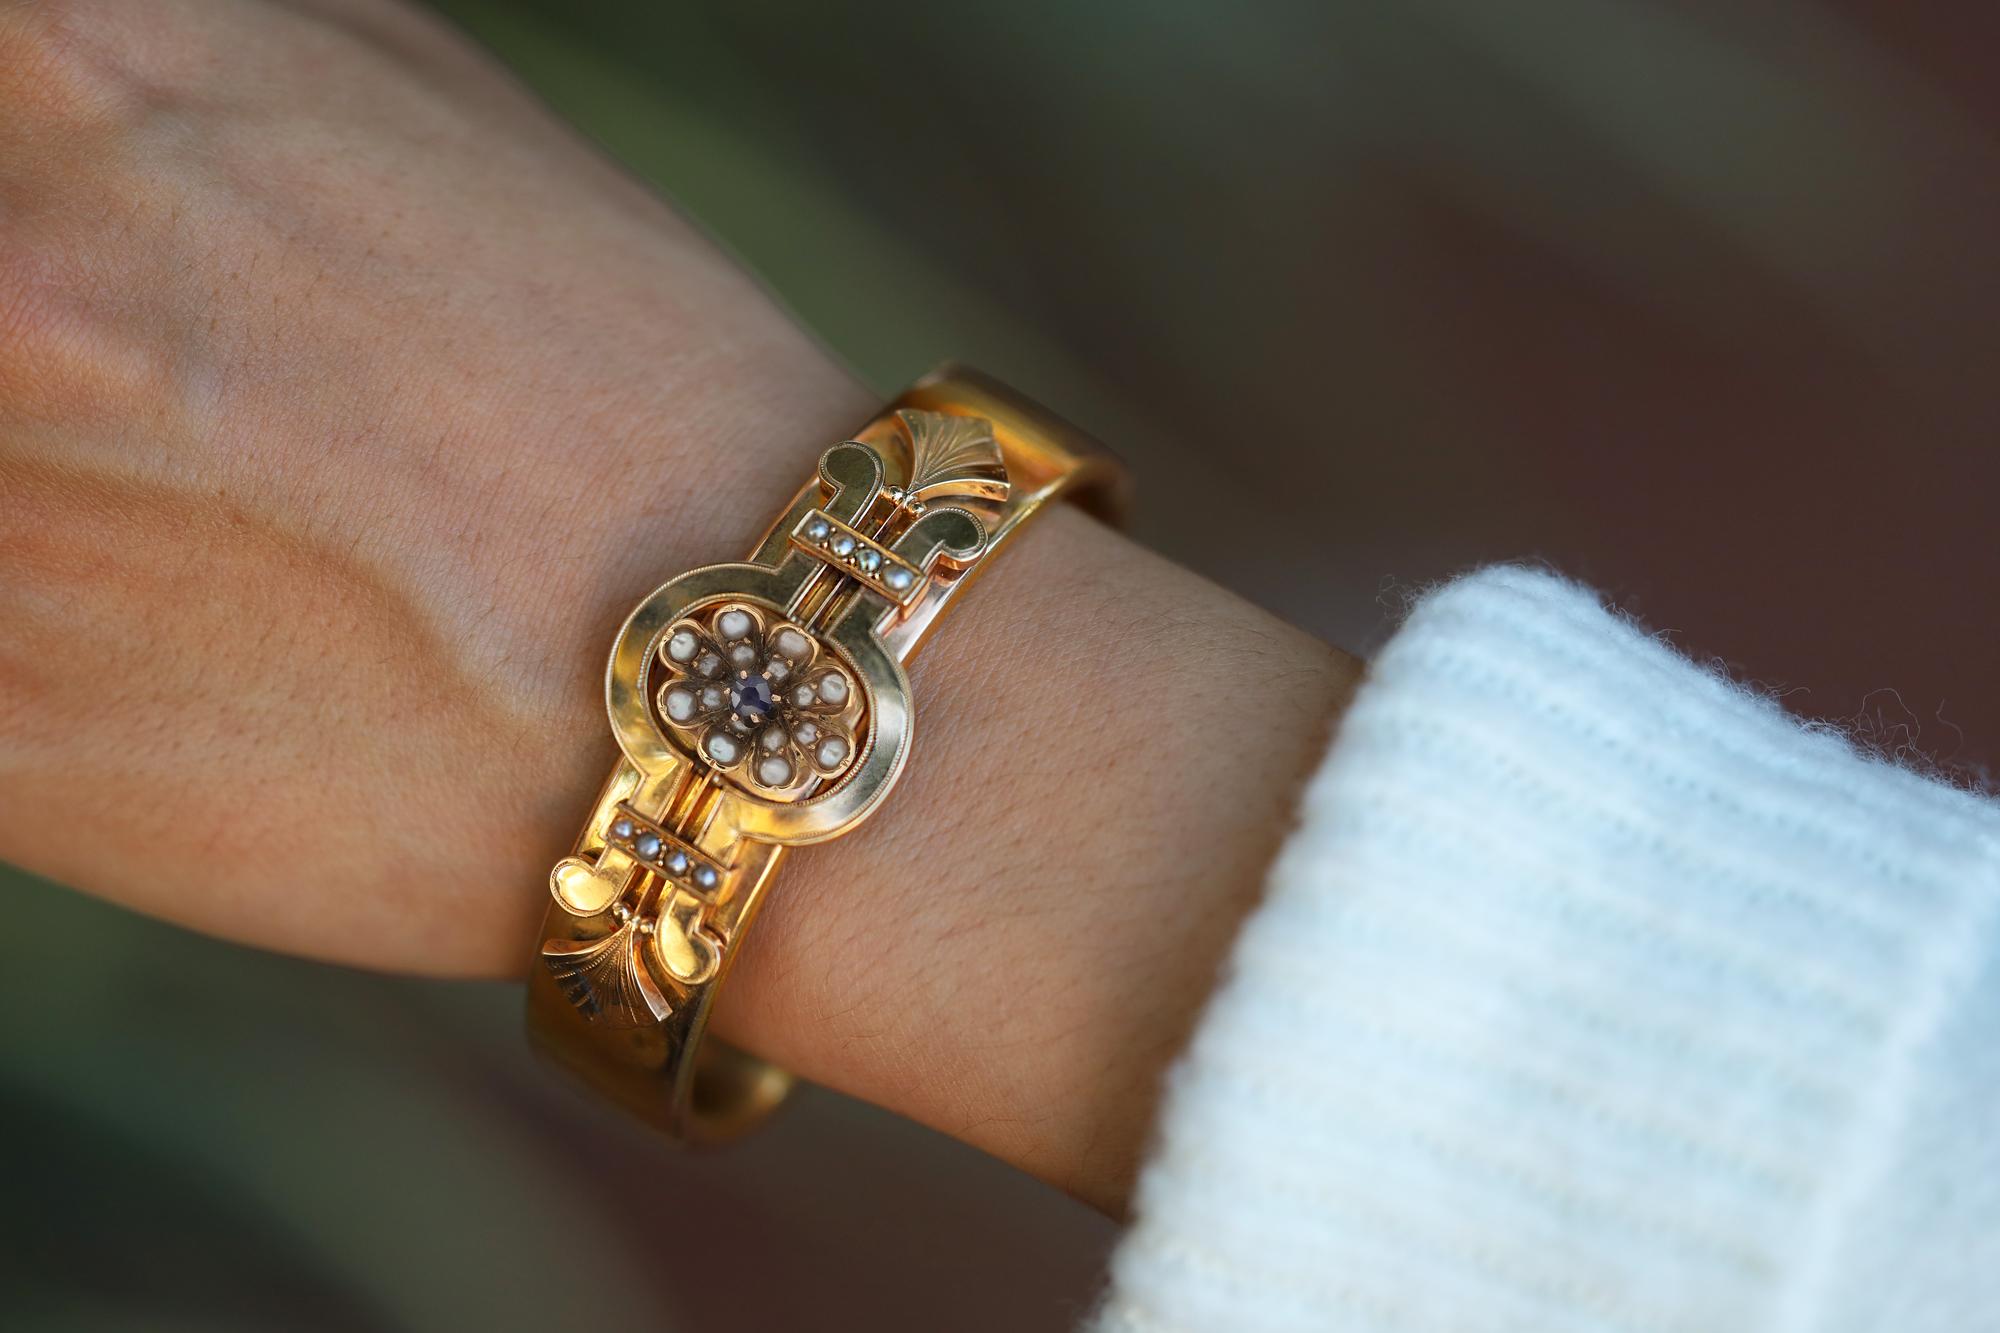 Ce bracelet très convoité, datant de la fin du XIXe siècle en France, est un exemple exceptionnel du design néoclassique français.  Également connu sous le nom d'époque victorienne ou Napoléon III, le bracelet en or jaune 18 carats est surmonté d'un